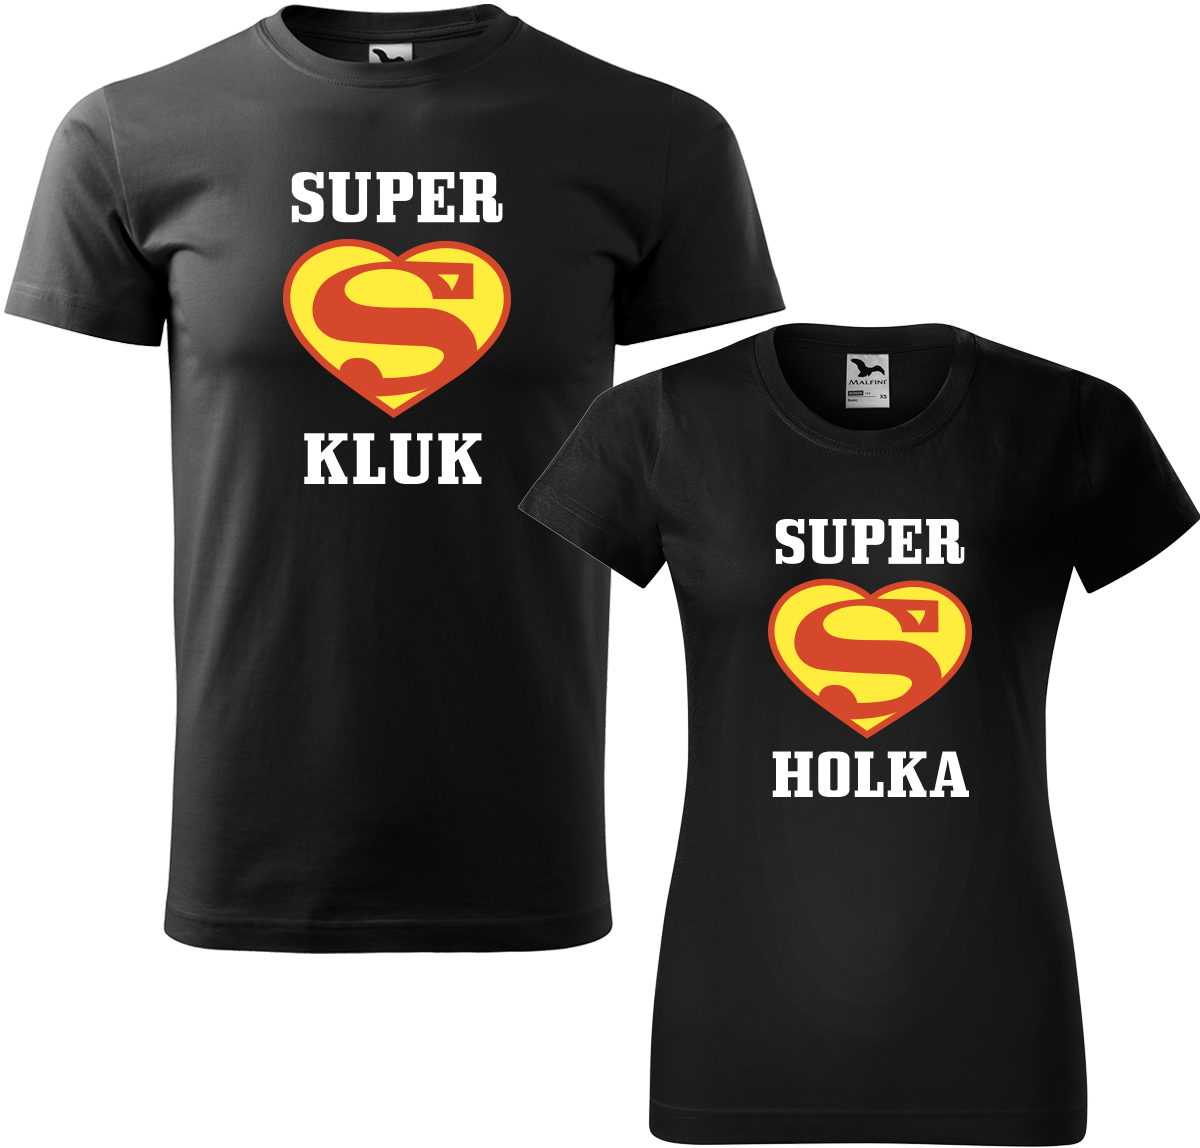 Trička pro páry - Super kluk / Super holka Barva: Černá (01), Velikost dámské tričko: S, Velikost pánské tričko: XL